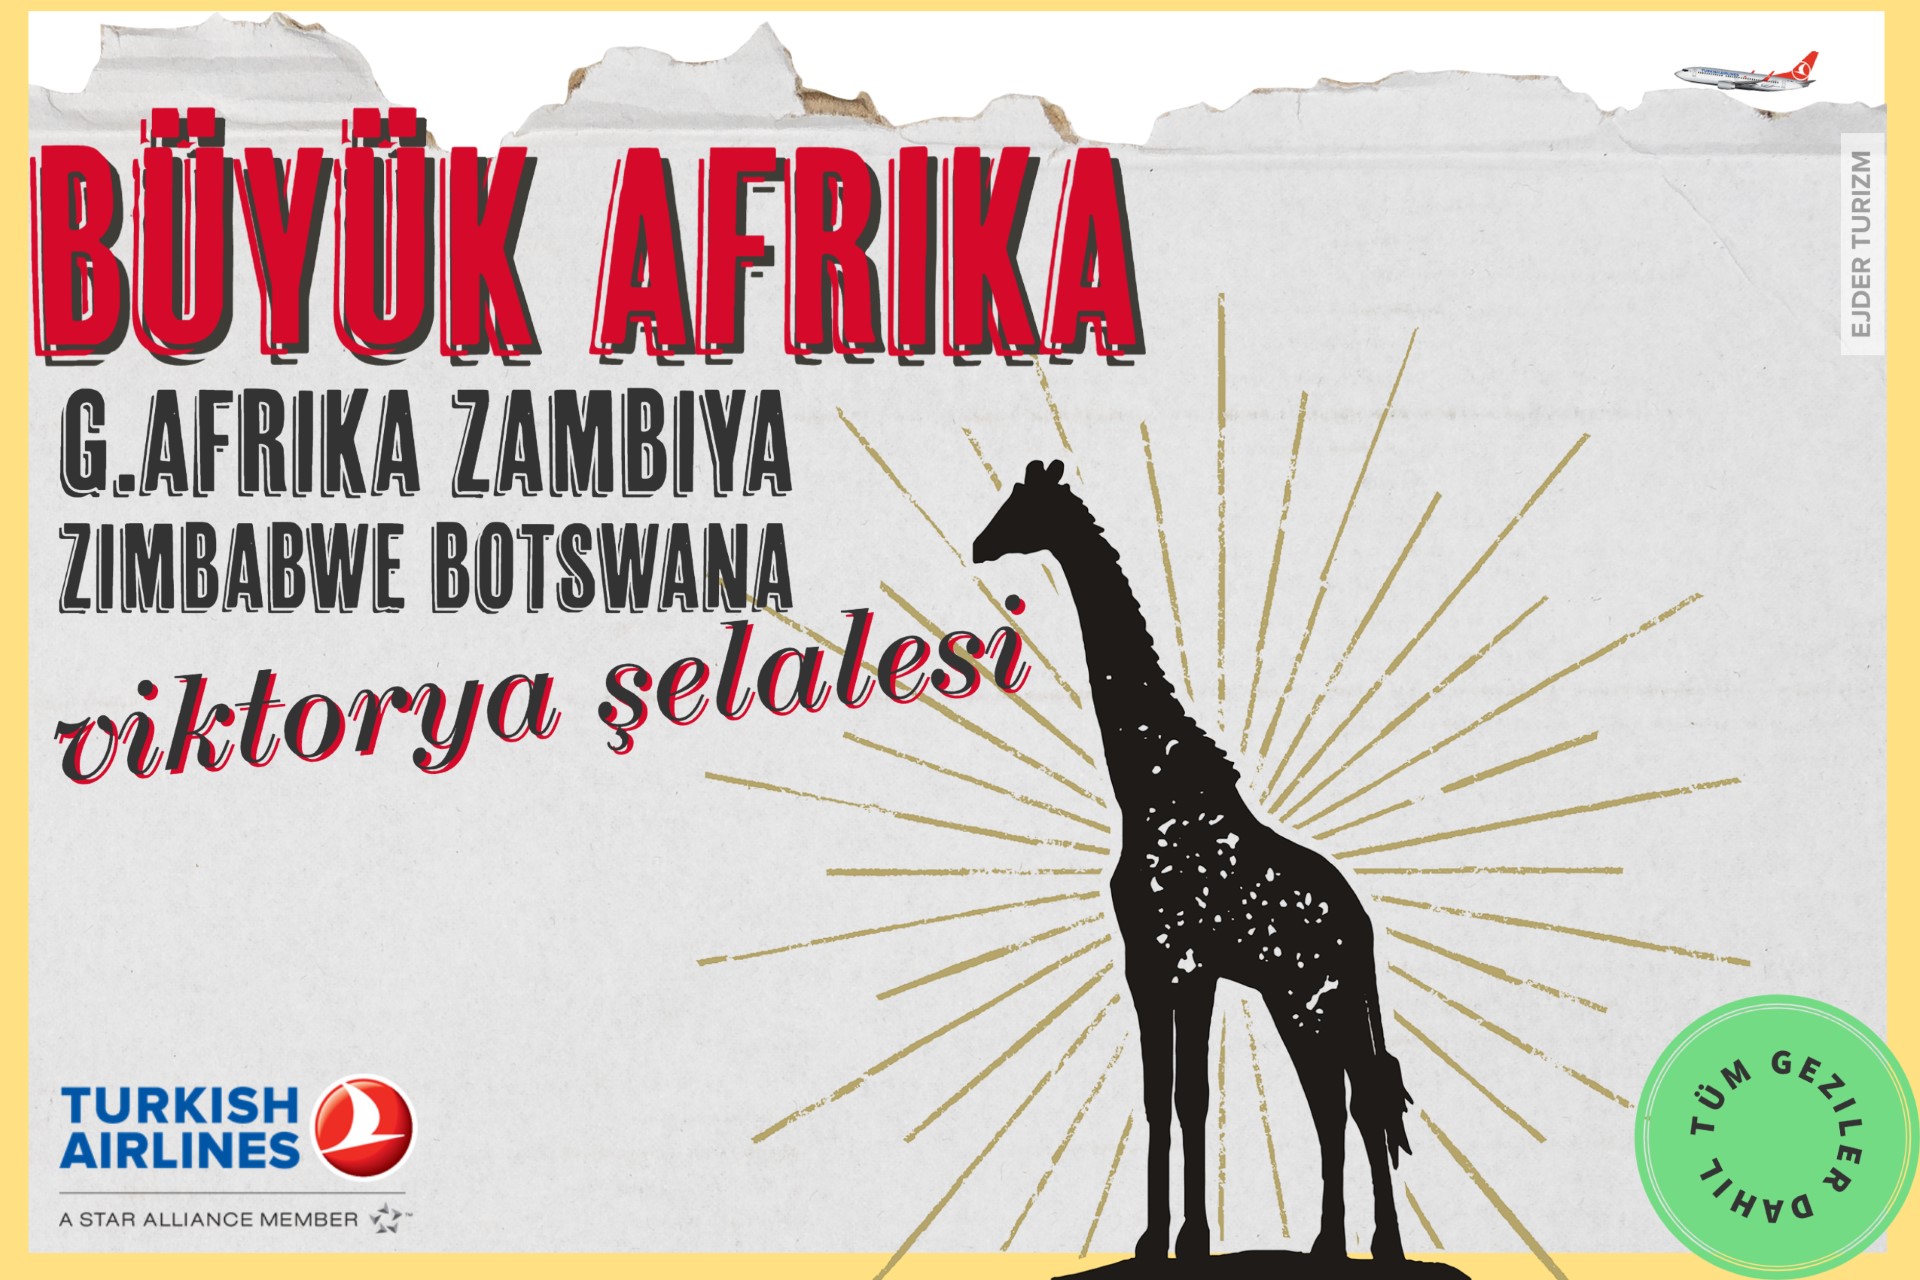 BÜYÜK AFRİKA TURU-GÜNEY AFRİKA ZAMBİYA ZİMBABWE BOTSWANA-12 GÜN